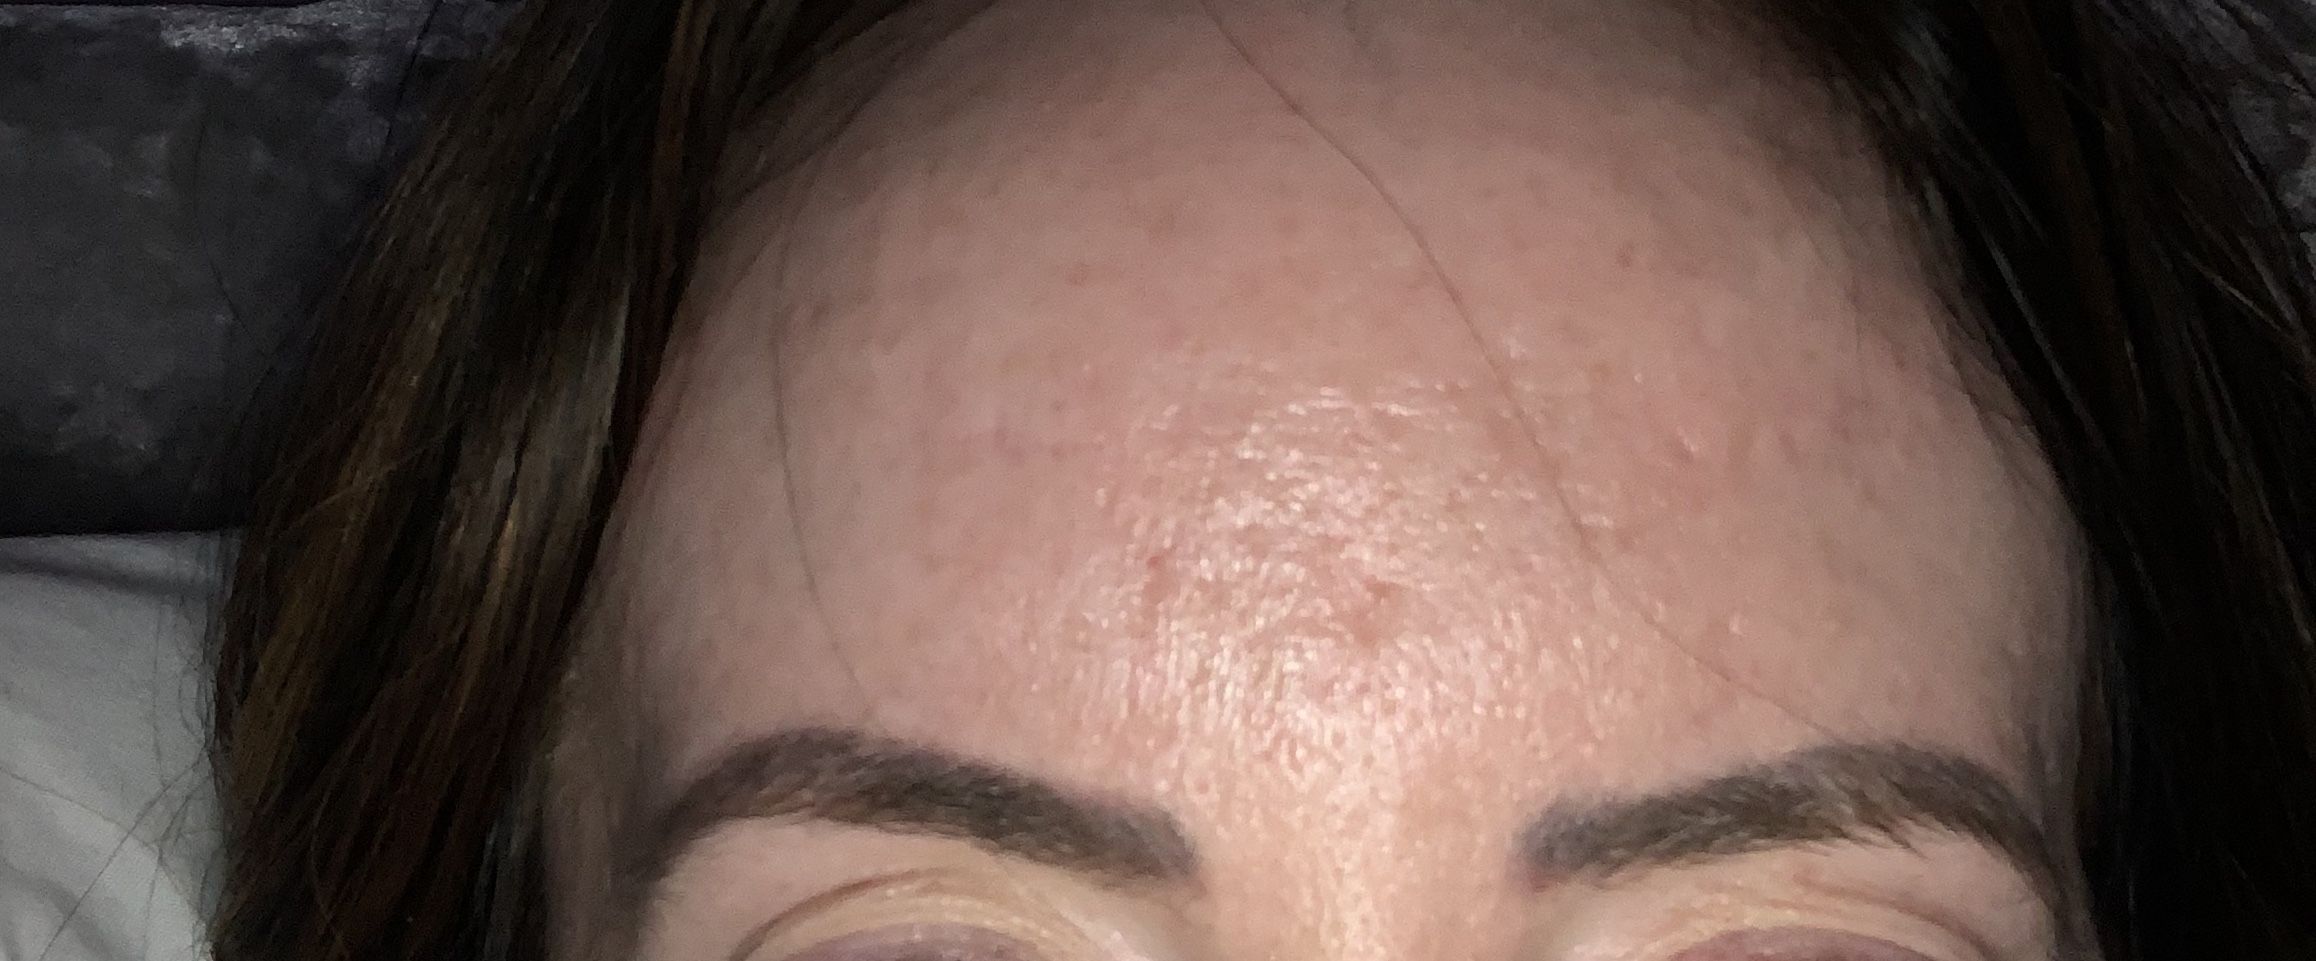 Forehead Acne Scars Scar Treatments